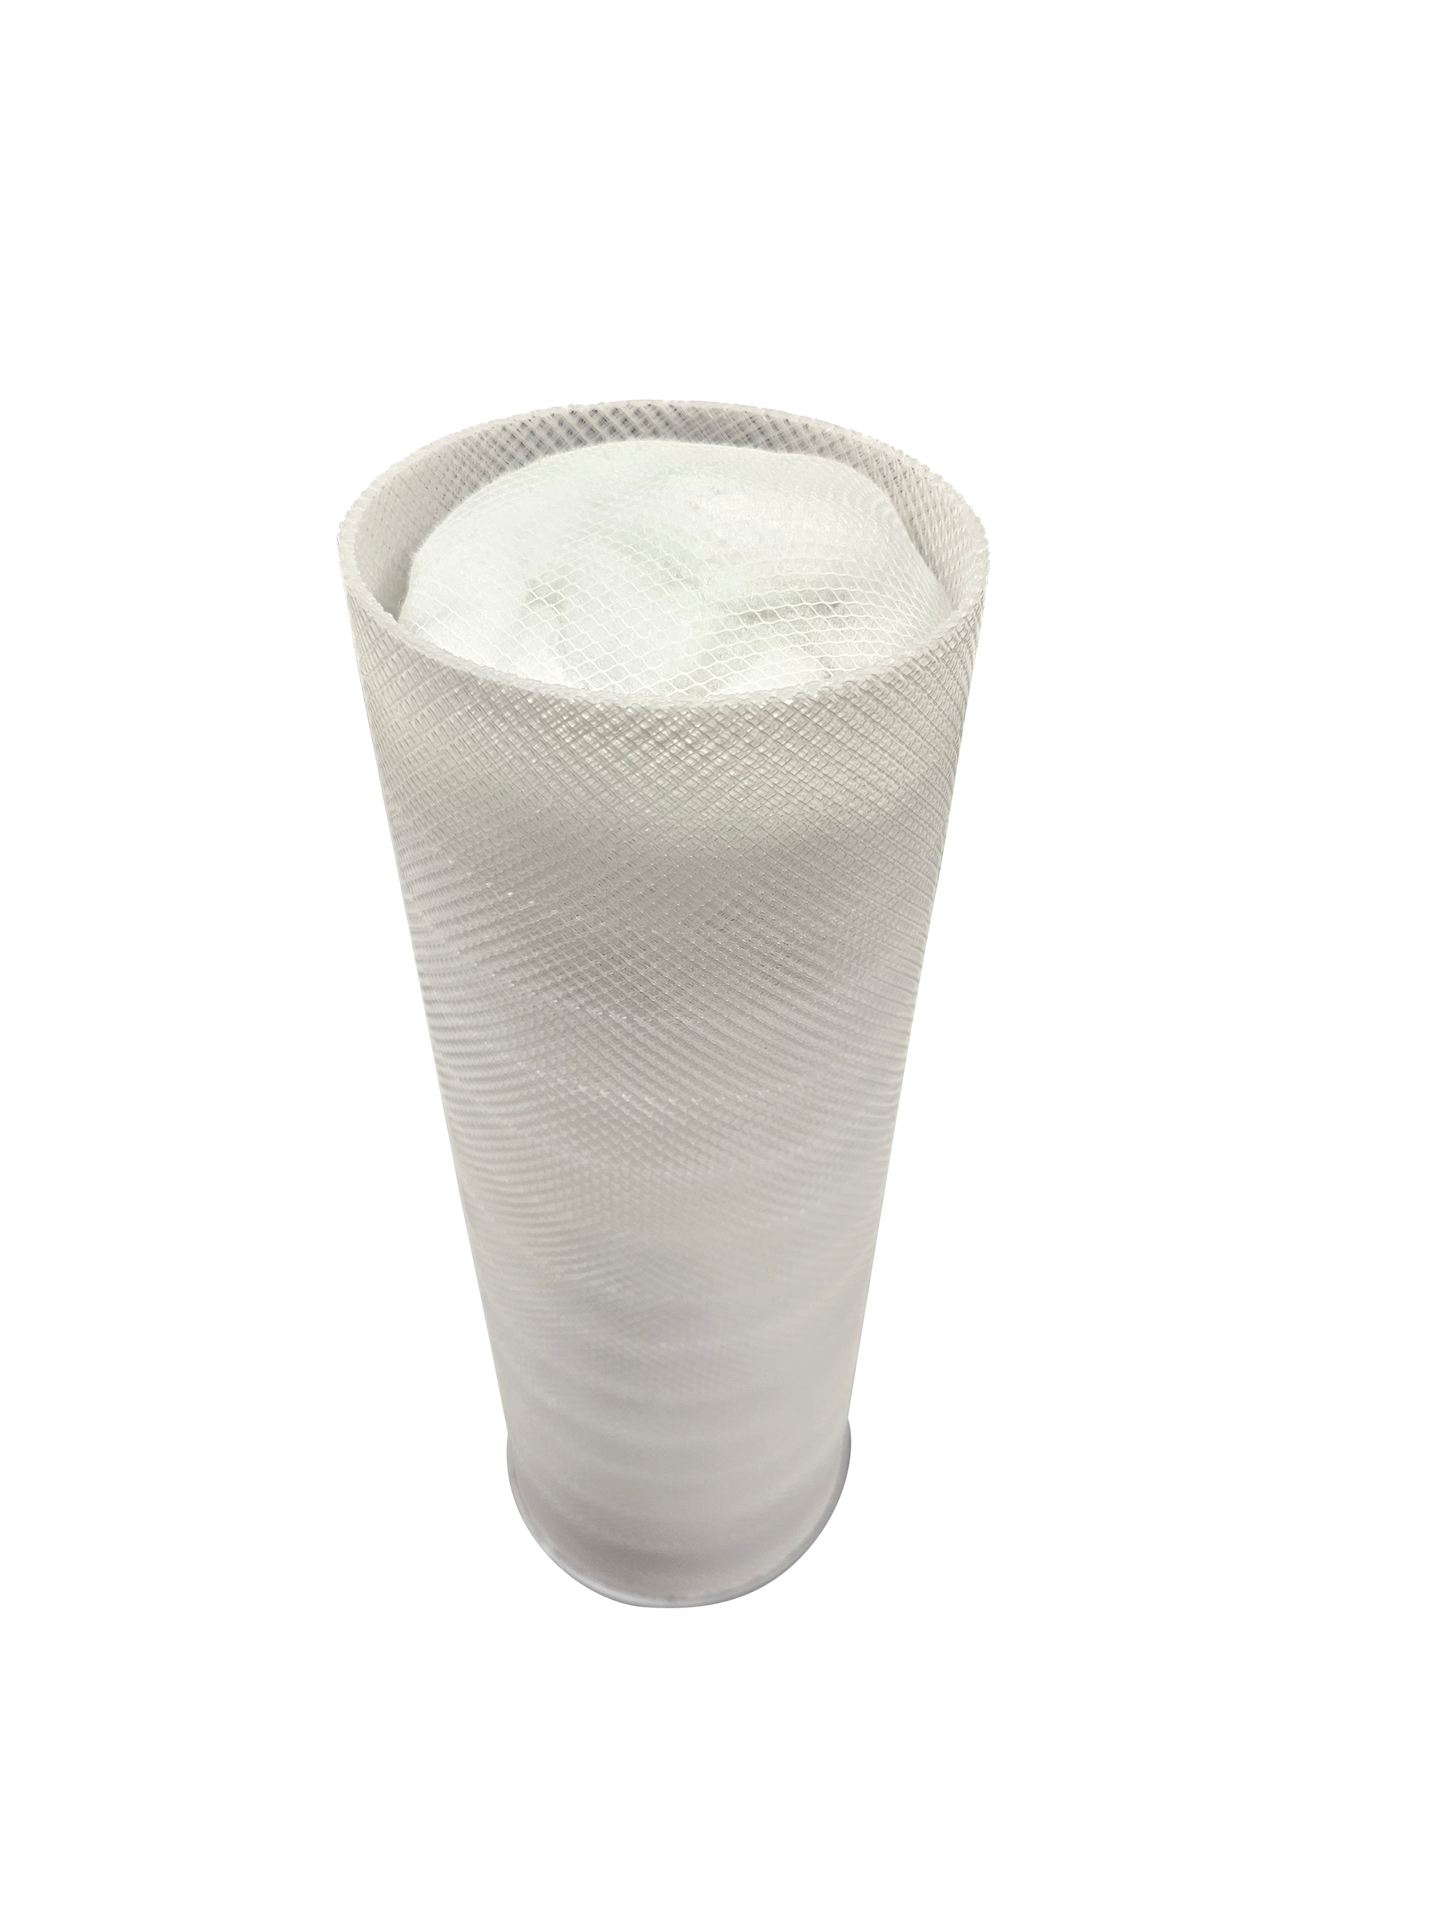 2 Stück Filterballs inkl. Aktivkohle. Refill für den genialen Mehrweg-Kartuschenfilter LongLife Whirlpoolfilter kurz (198mm). Austauschbares Filtermaterial für glasklares Wasser in Pools und Whirlpools.